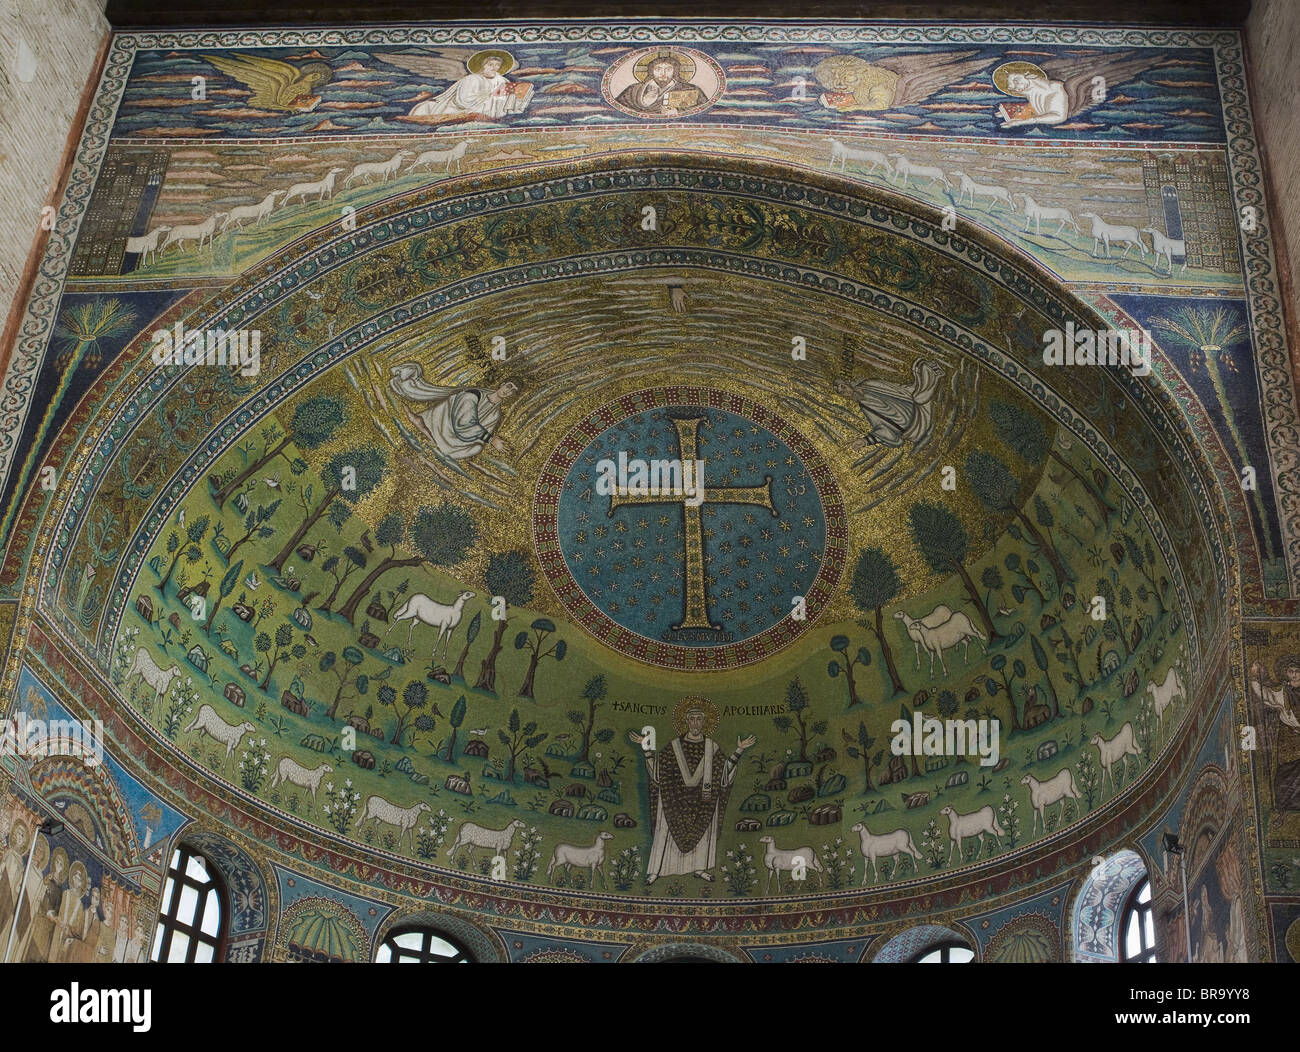 Italien-Ravenna 6-7. Jh. byzantinischen Mosaiken in Sant' Apollinare in Classe, Apsis mit Christus und Schafherde. Stockfoto